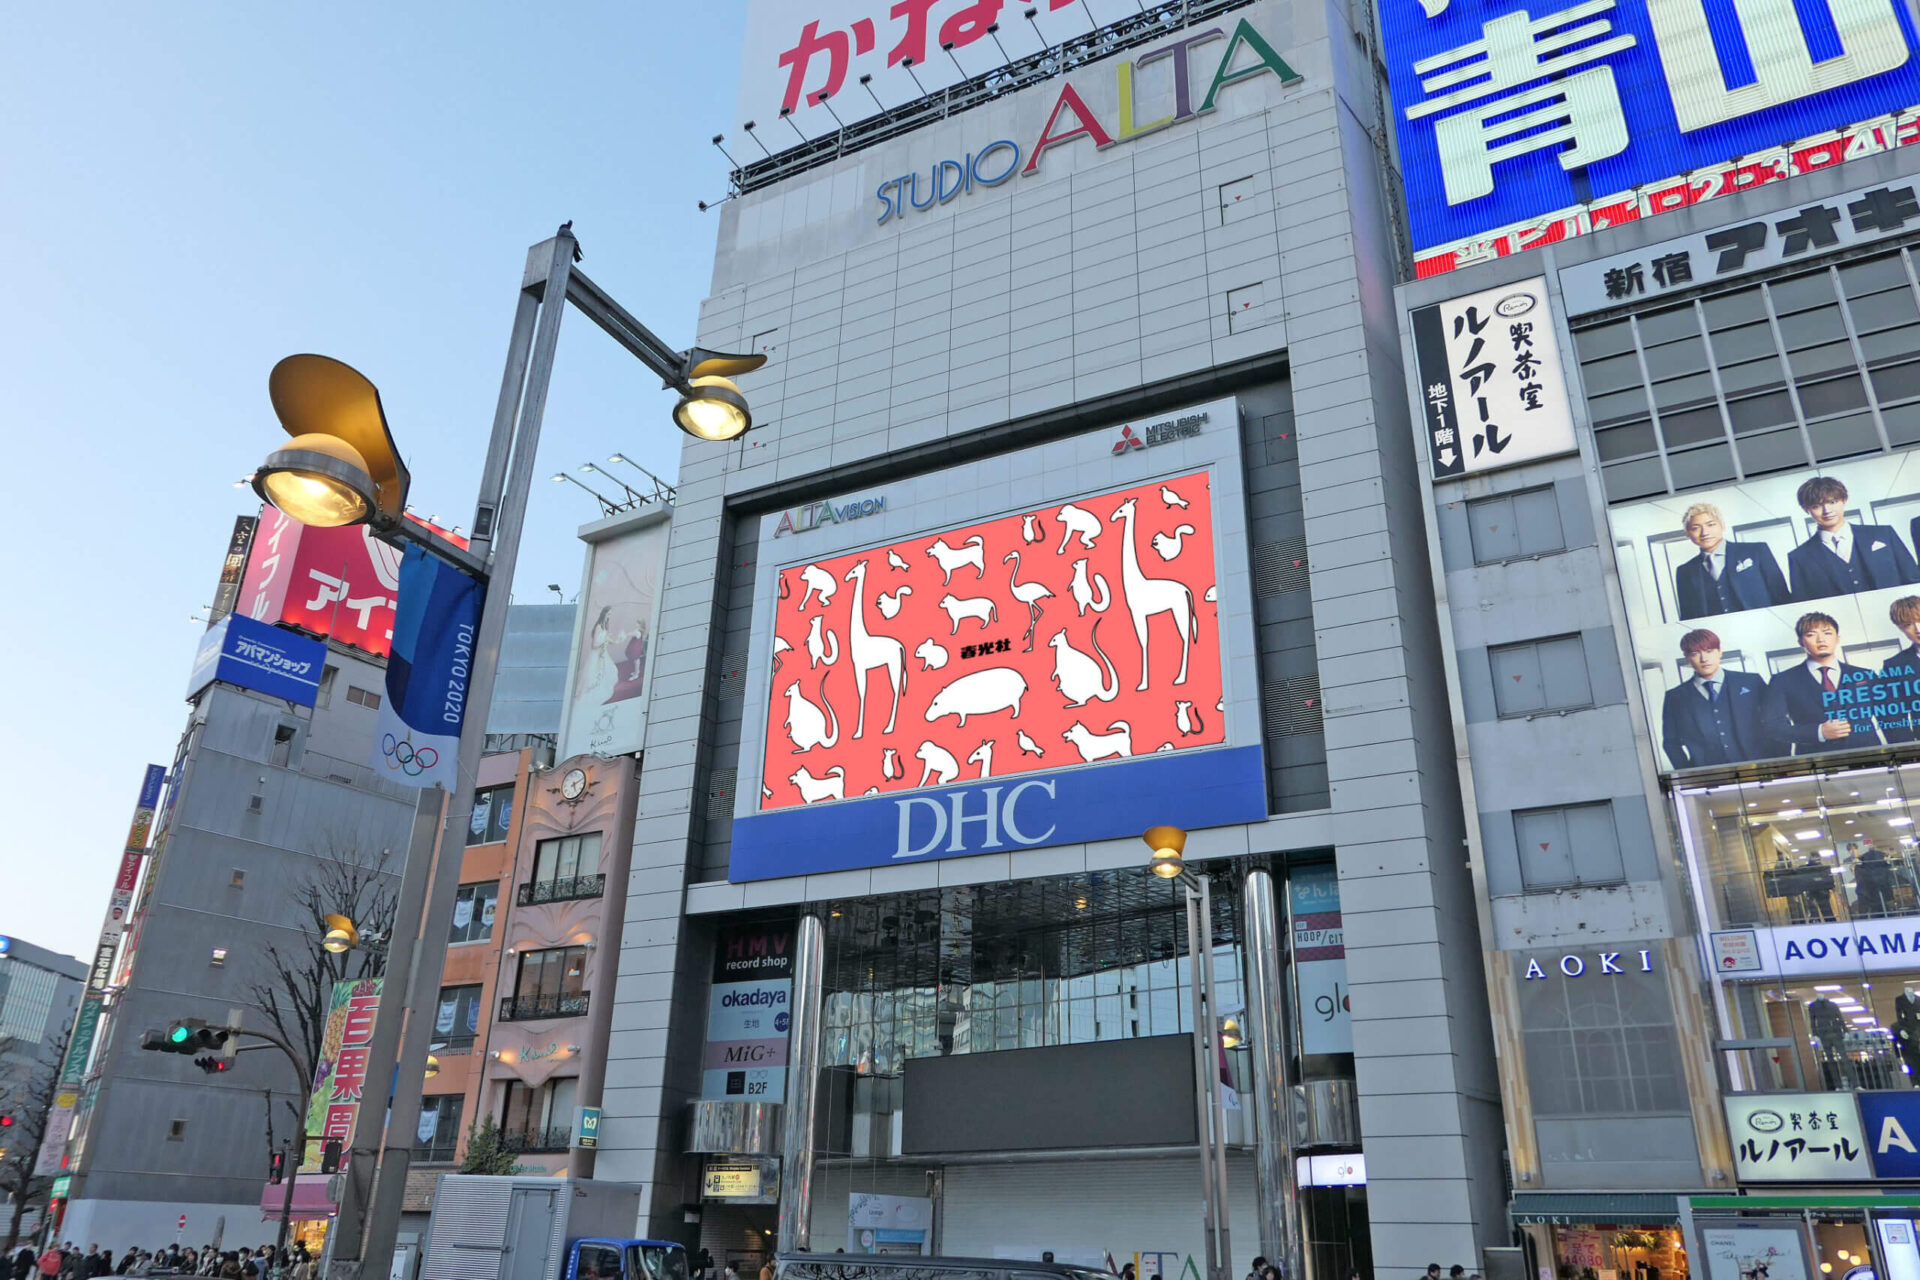 新宿駅東口正面アルタ館壁面に設置されている横型の大型デジタルサイネージ